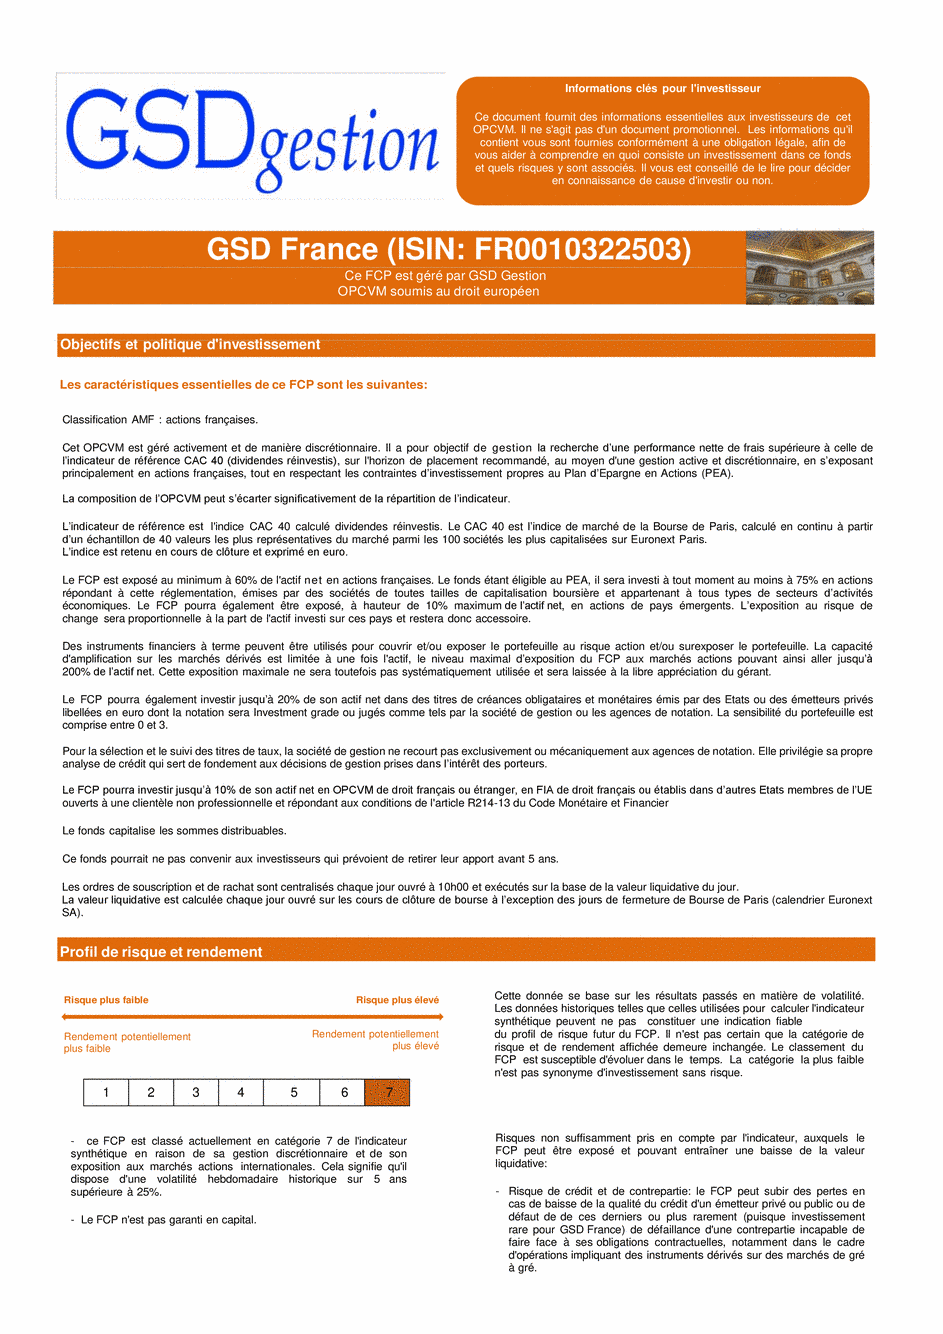 DICI-Prospectus Complet GSD France - 15/02/2021 - Français